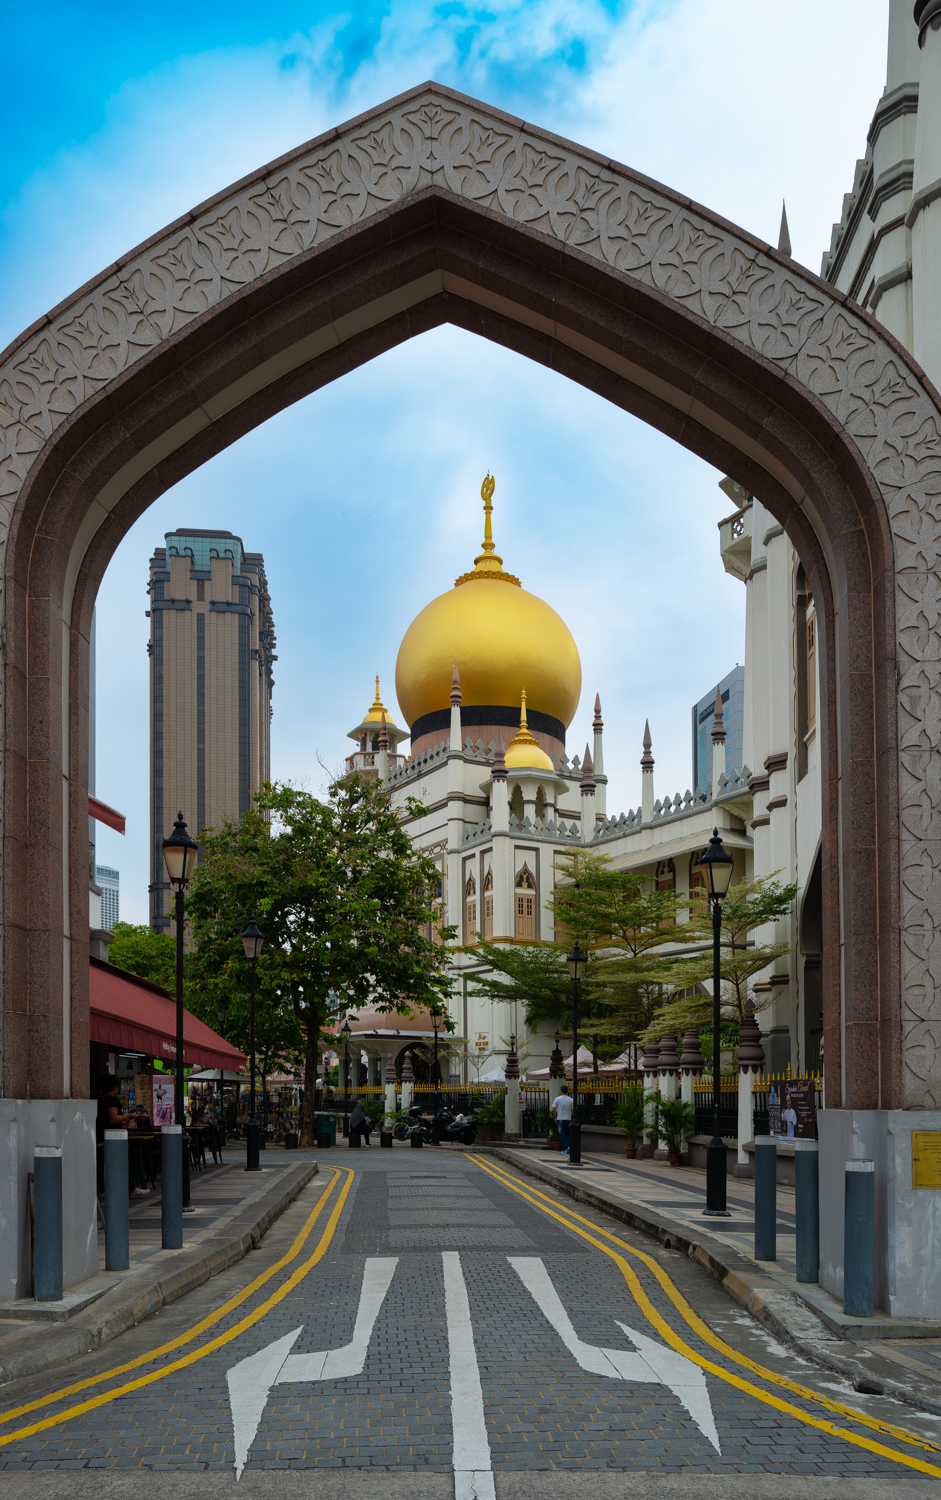 Little Arabia, Masjid Sultan Mosque